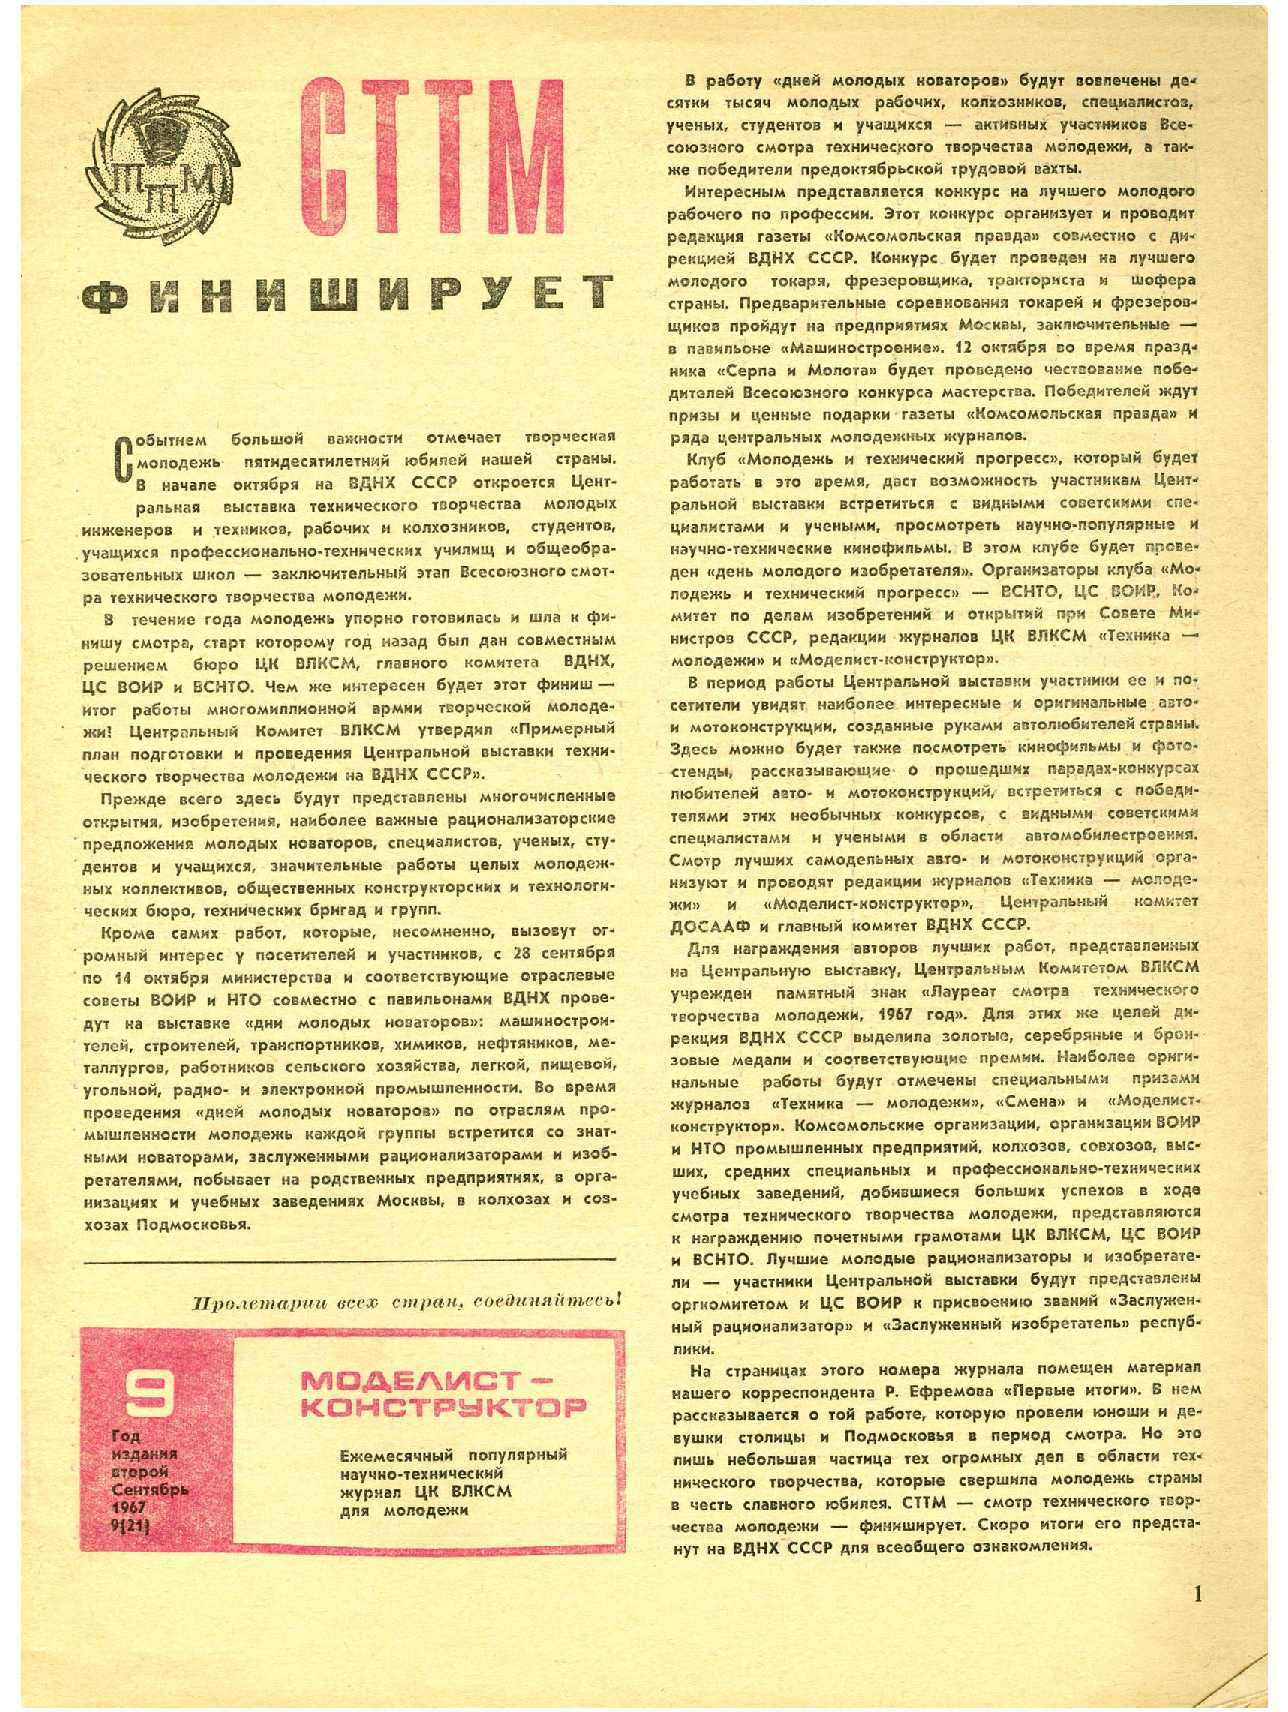 МК 9, 1967, 1 c.